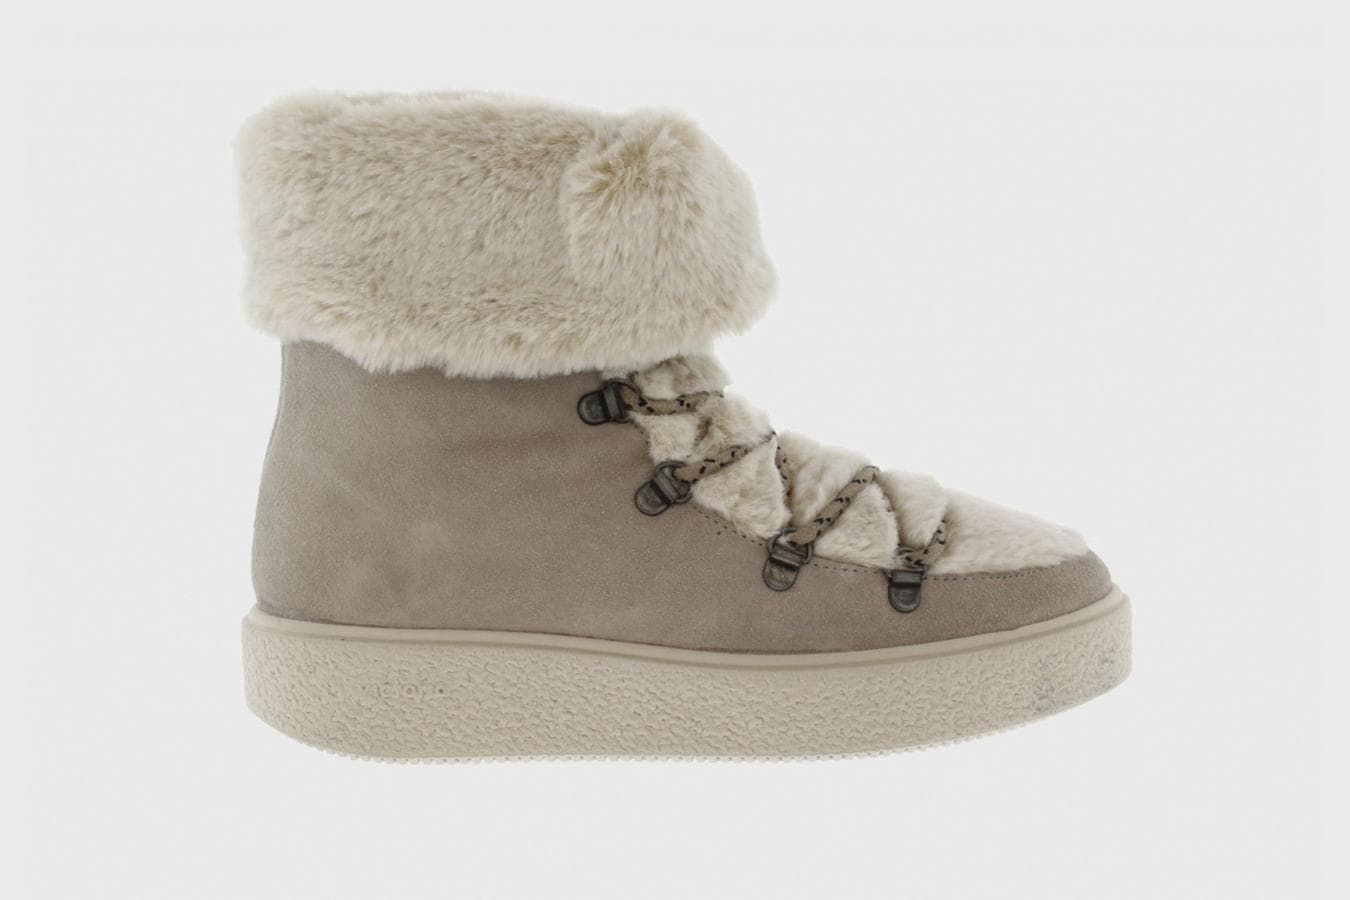 Estas las botas de nieve baratas (y muy bonitas) que querrás ponerte todo el invierno | Mujer Hoy